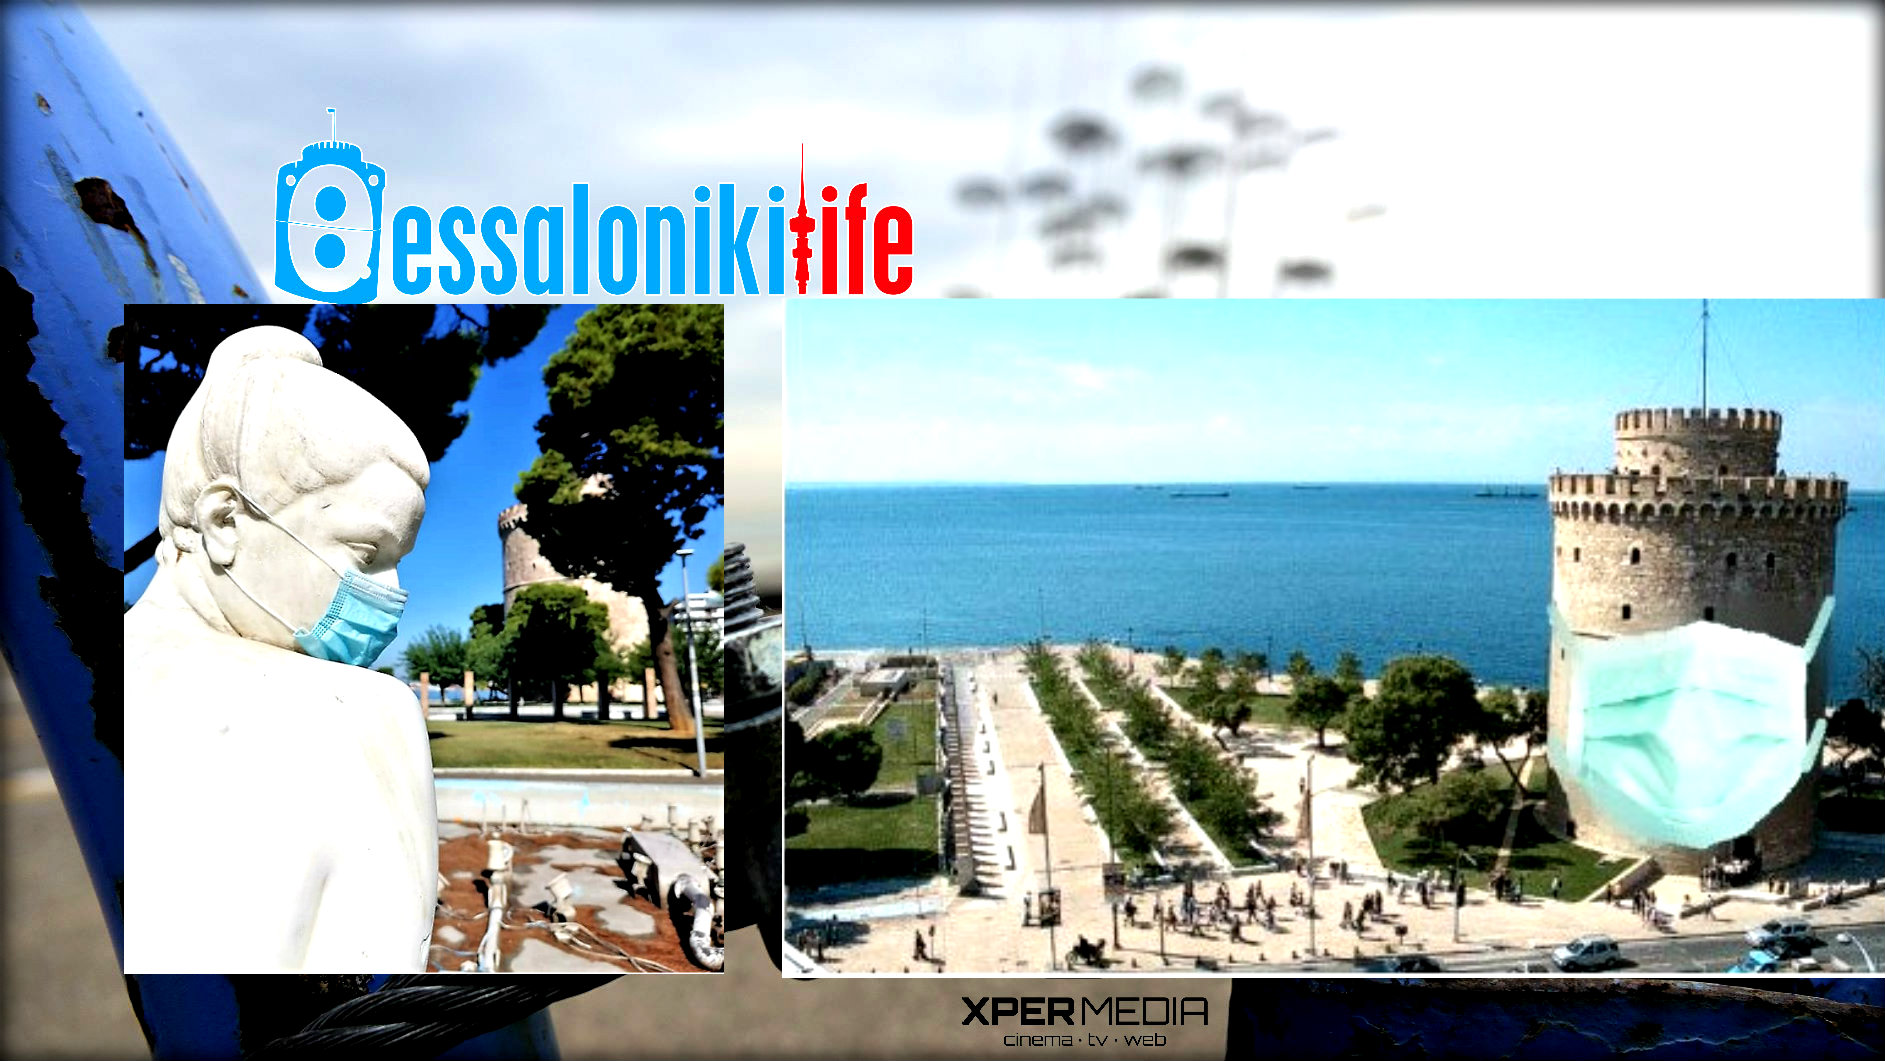 Θεσσαλονίκη: Lockdown…στον αθλητισμό και την τέχνη